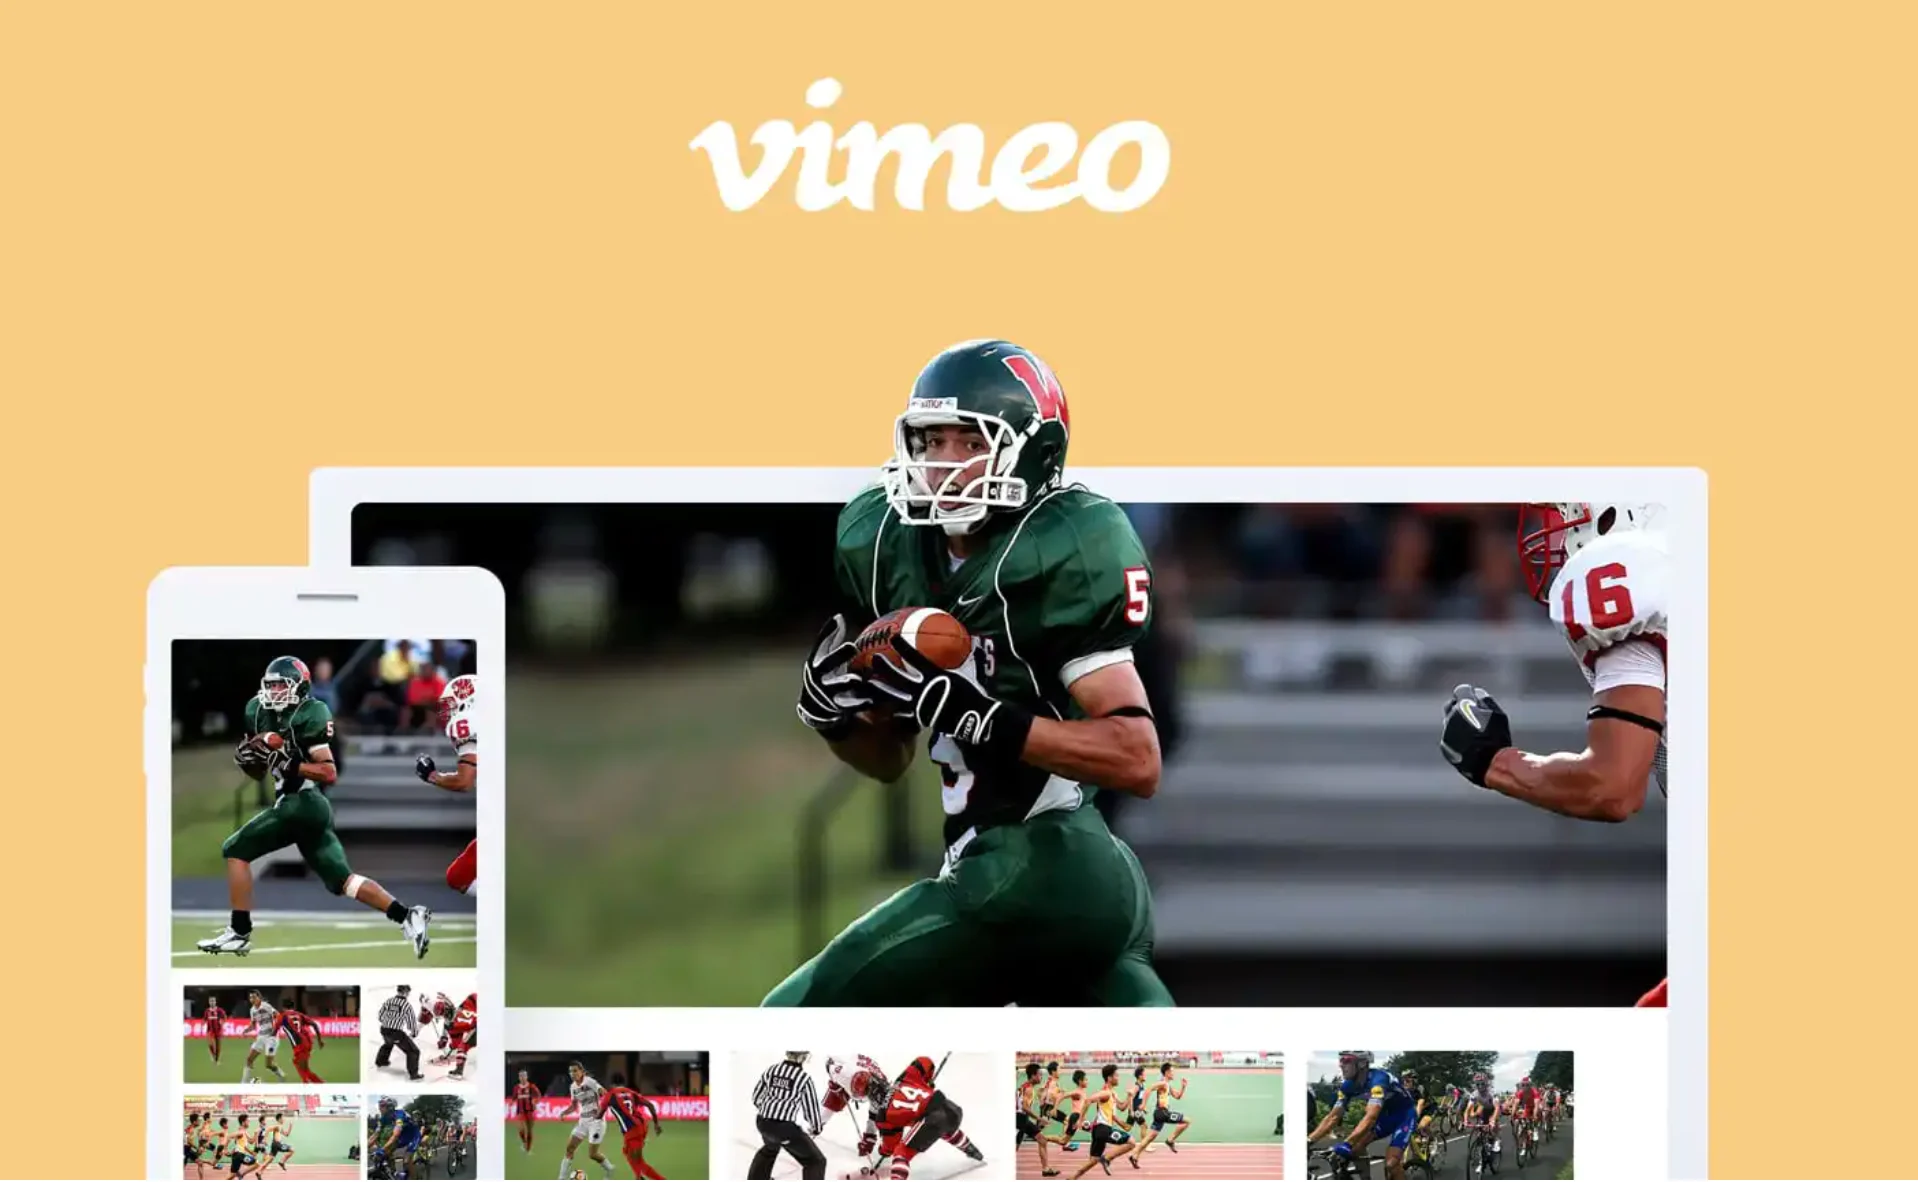 A screenshot of Vimeo Livestream of a football player